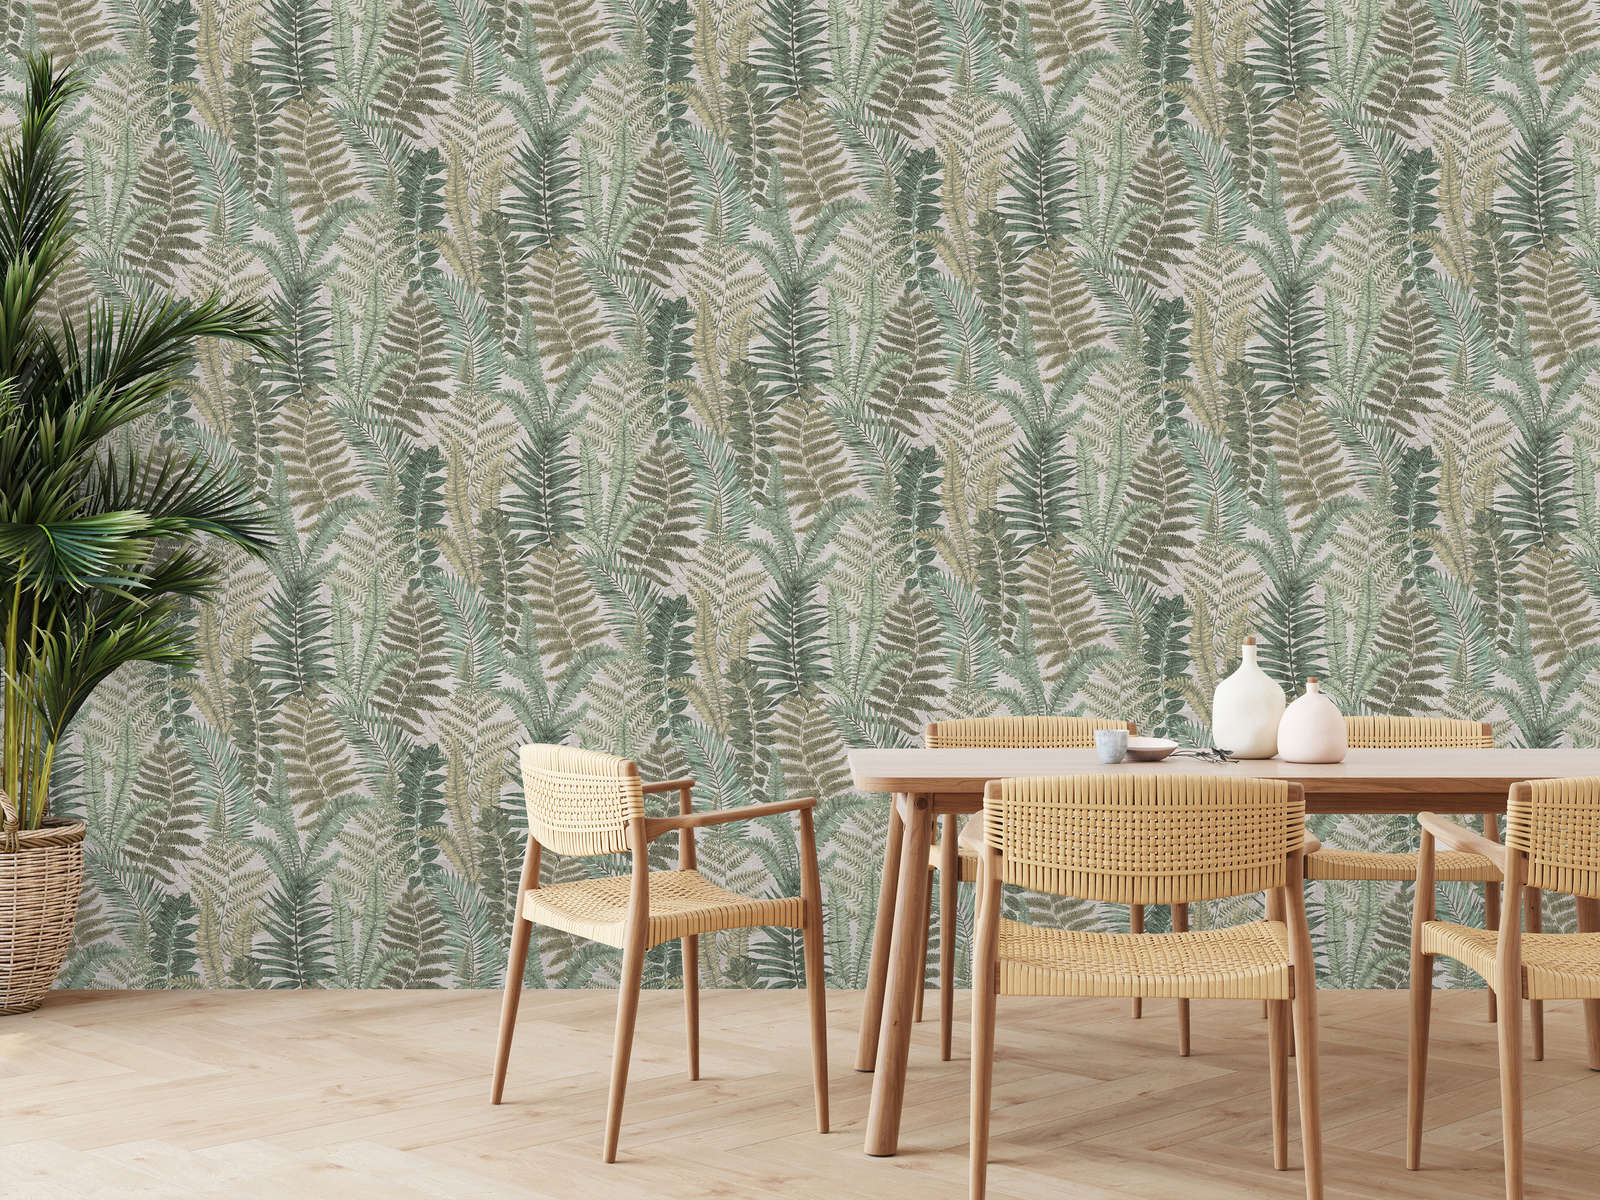             wallpaper floral with fern leaves light textured, matt - beige, green, brown
        